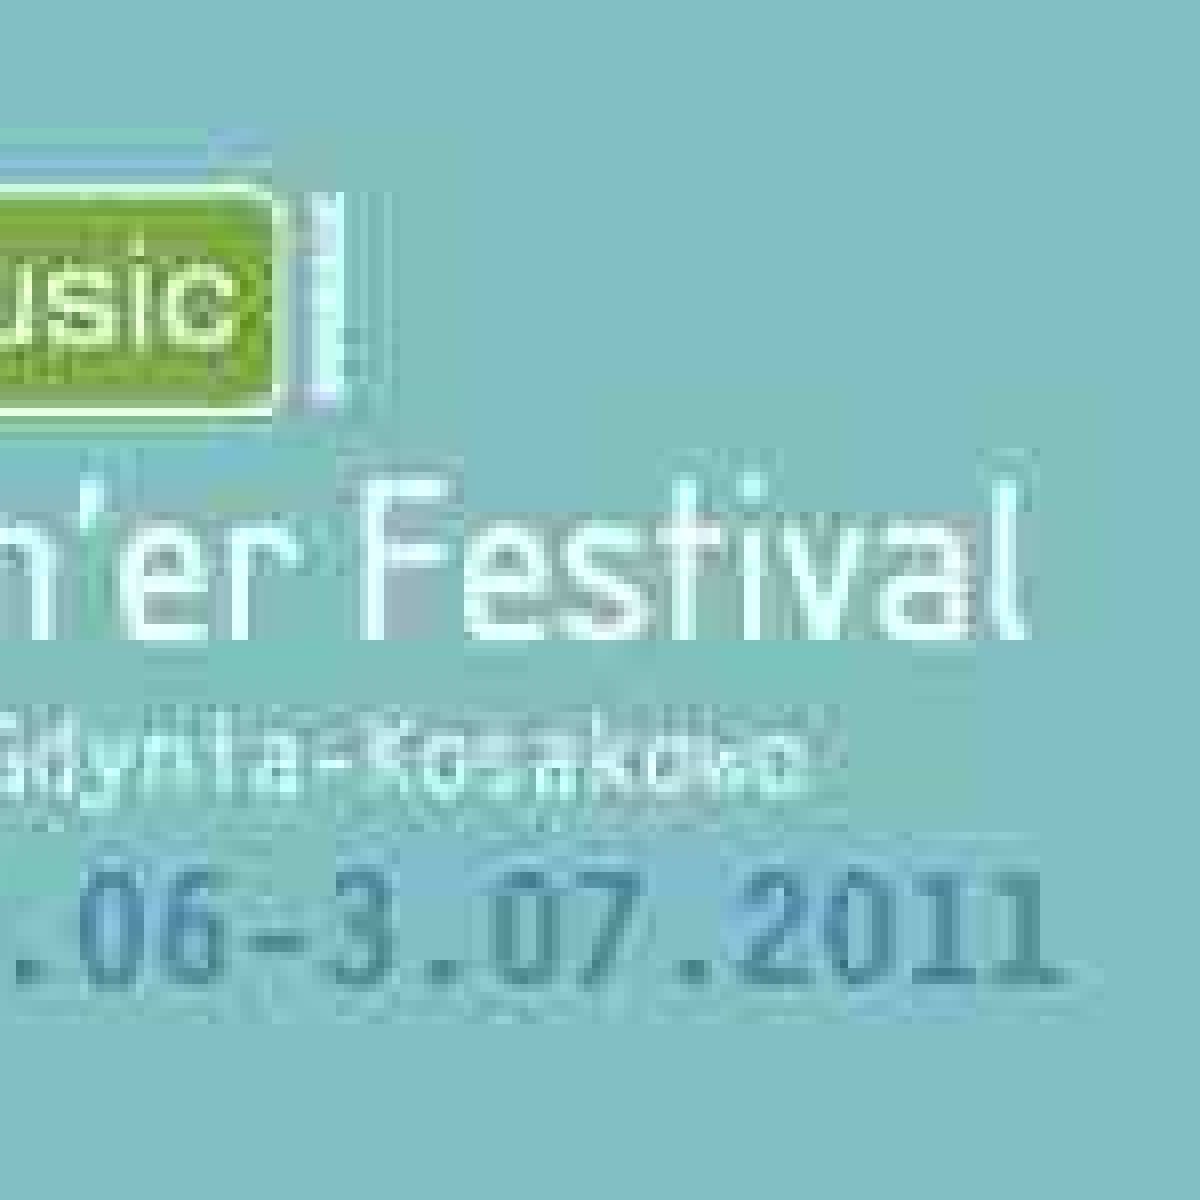 Instytut Sztuki Wyspa na Opener Festival w Gdyni!